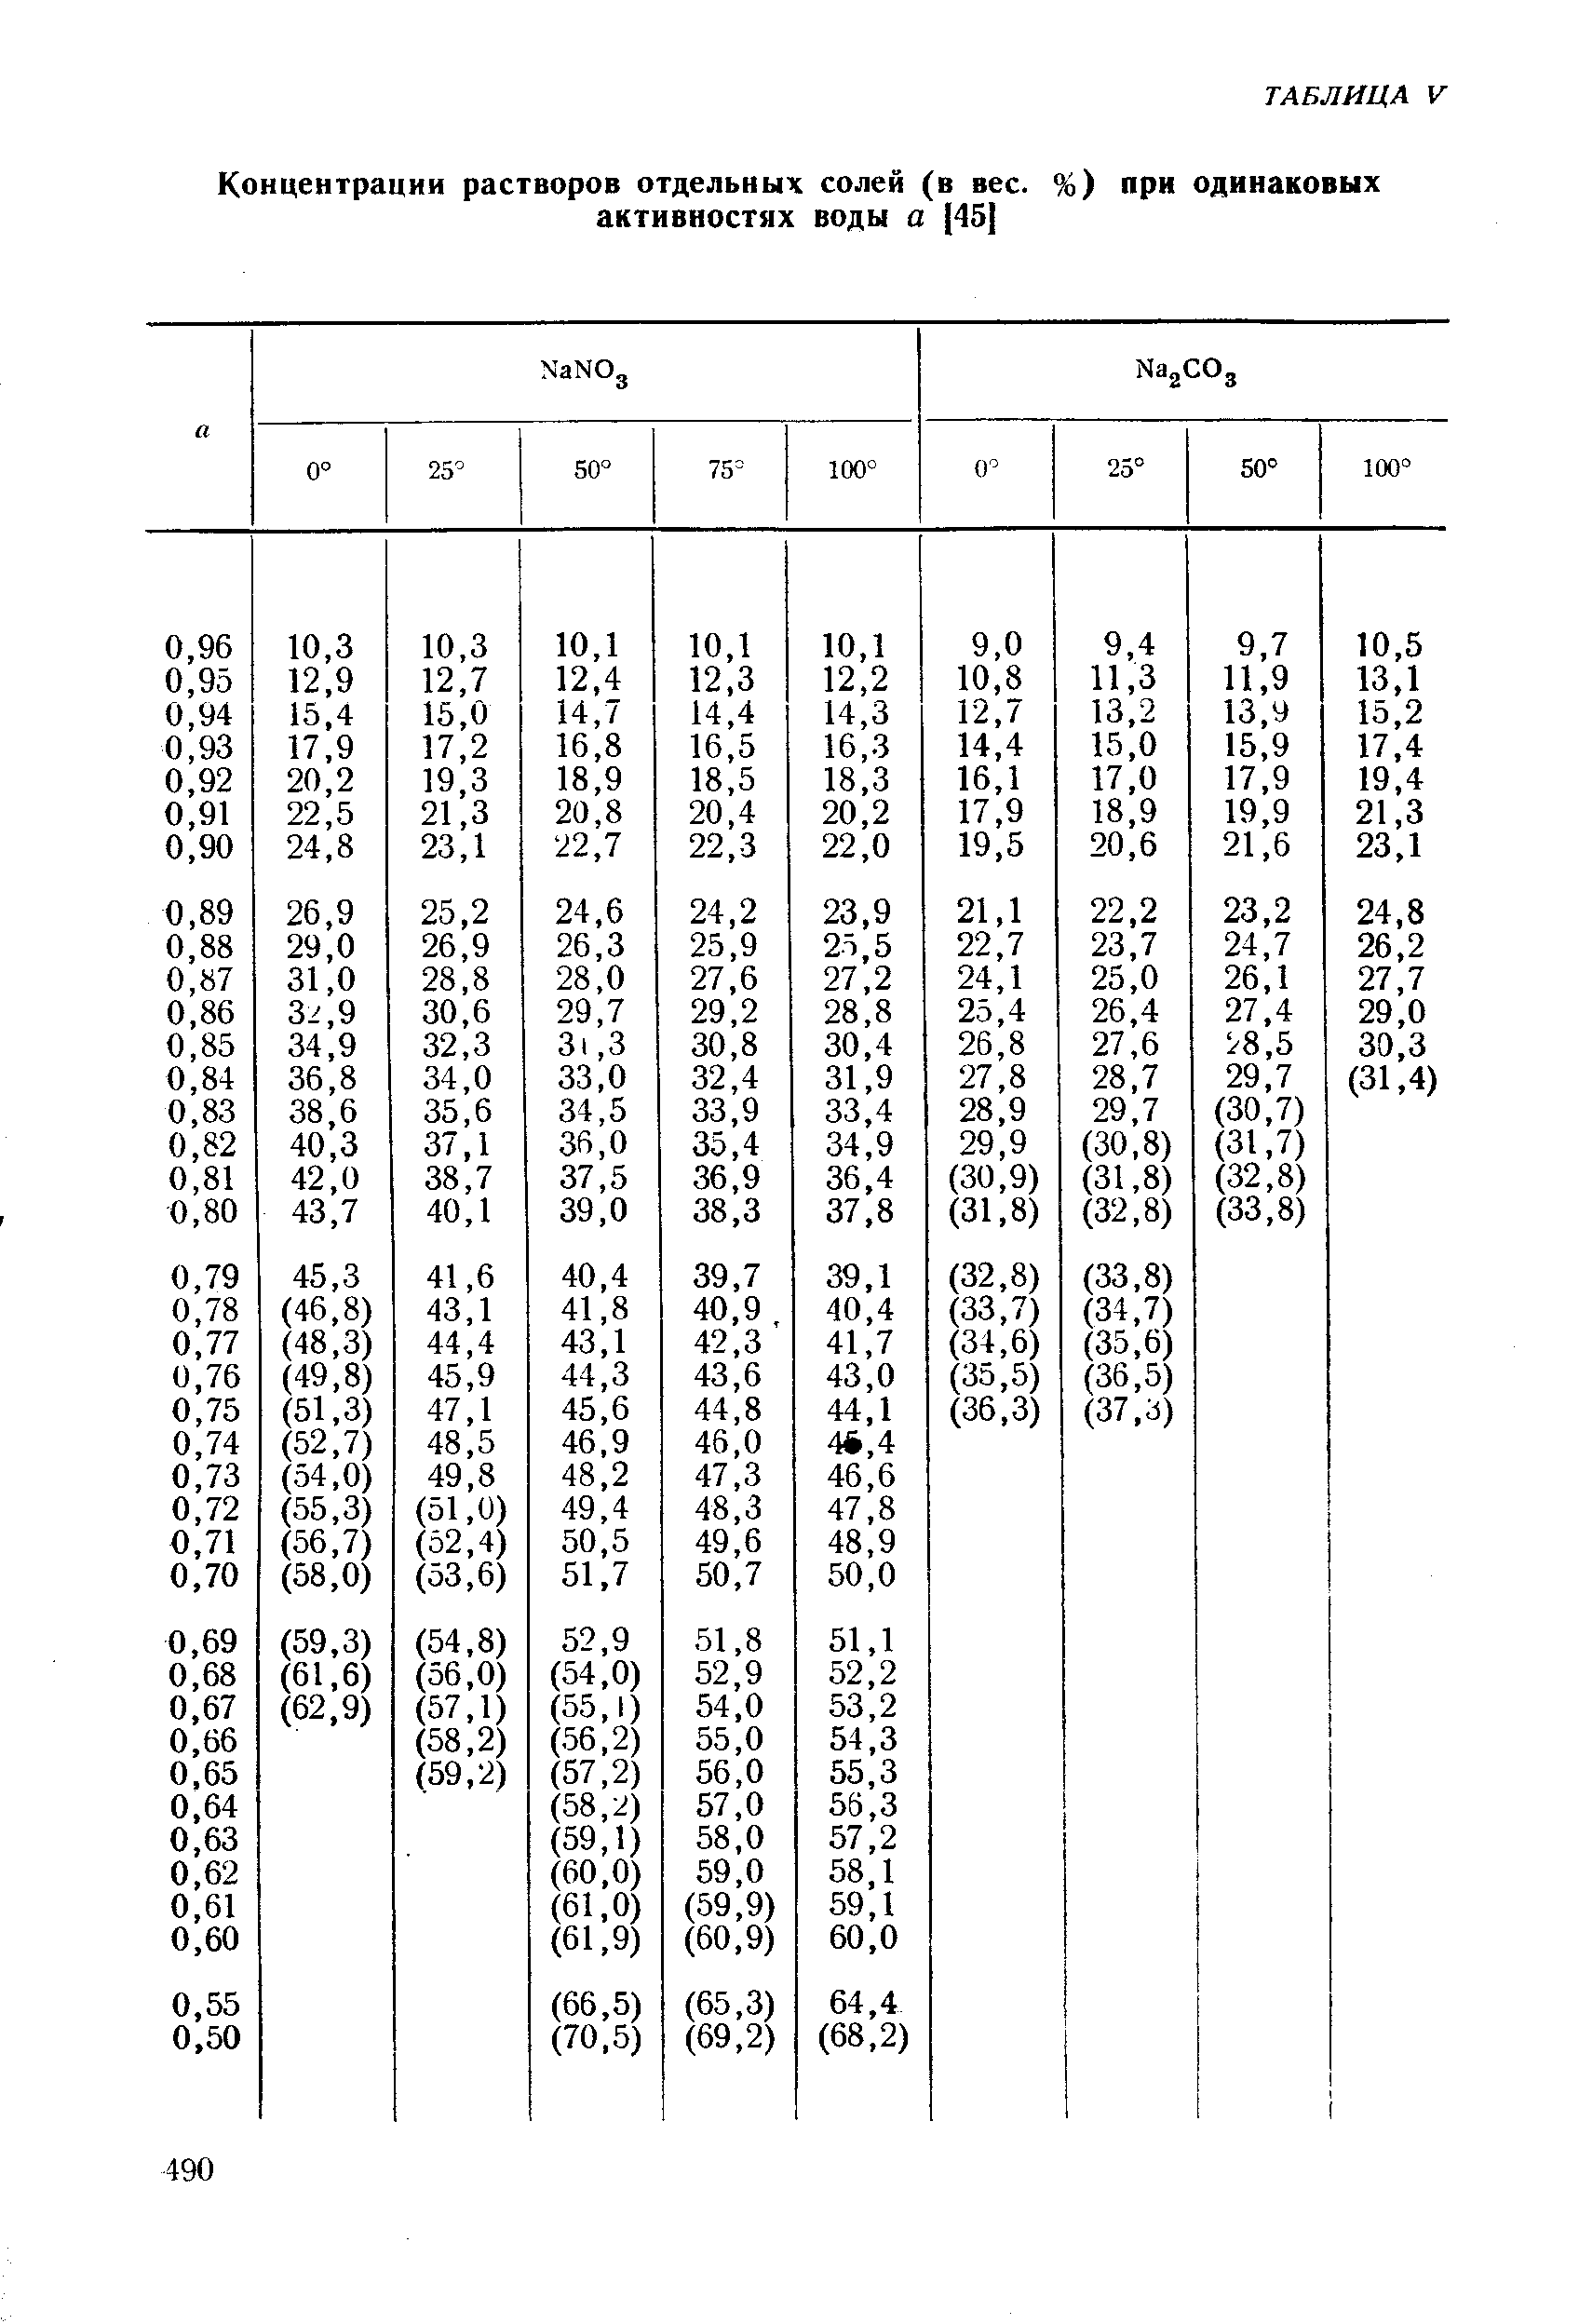 Концентрации растворов отдельных солей (в вес.